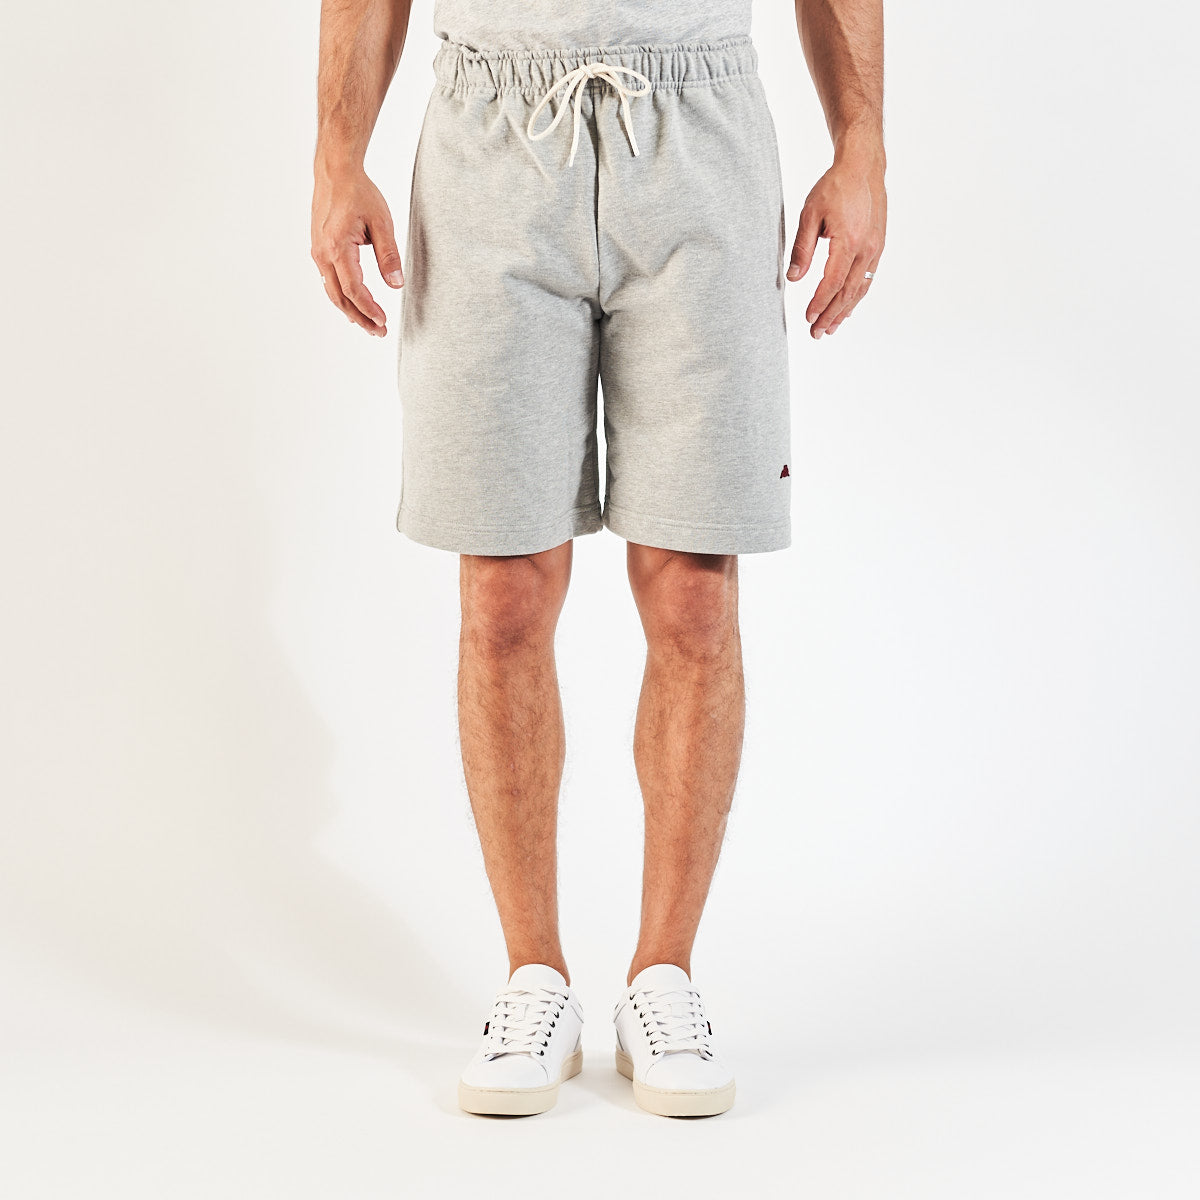 Pantalones cortes gris Karraway Robe di Kappa hombre - imagen 1